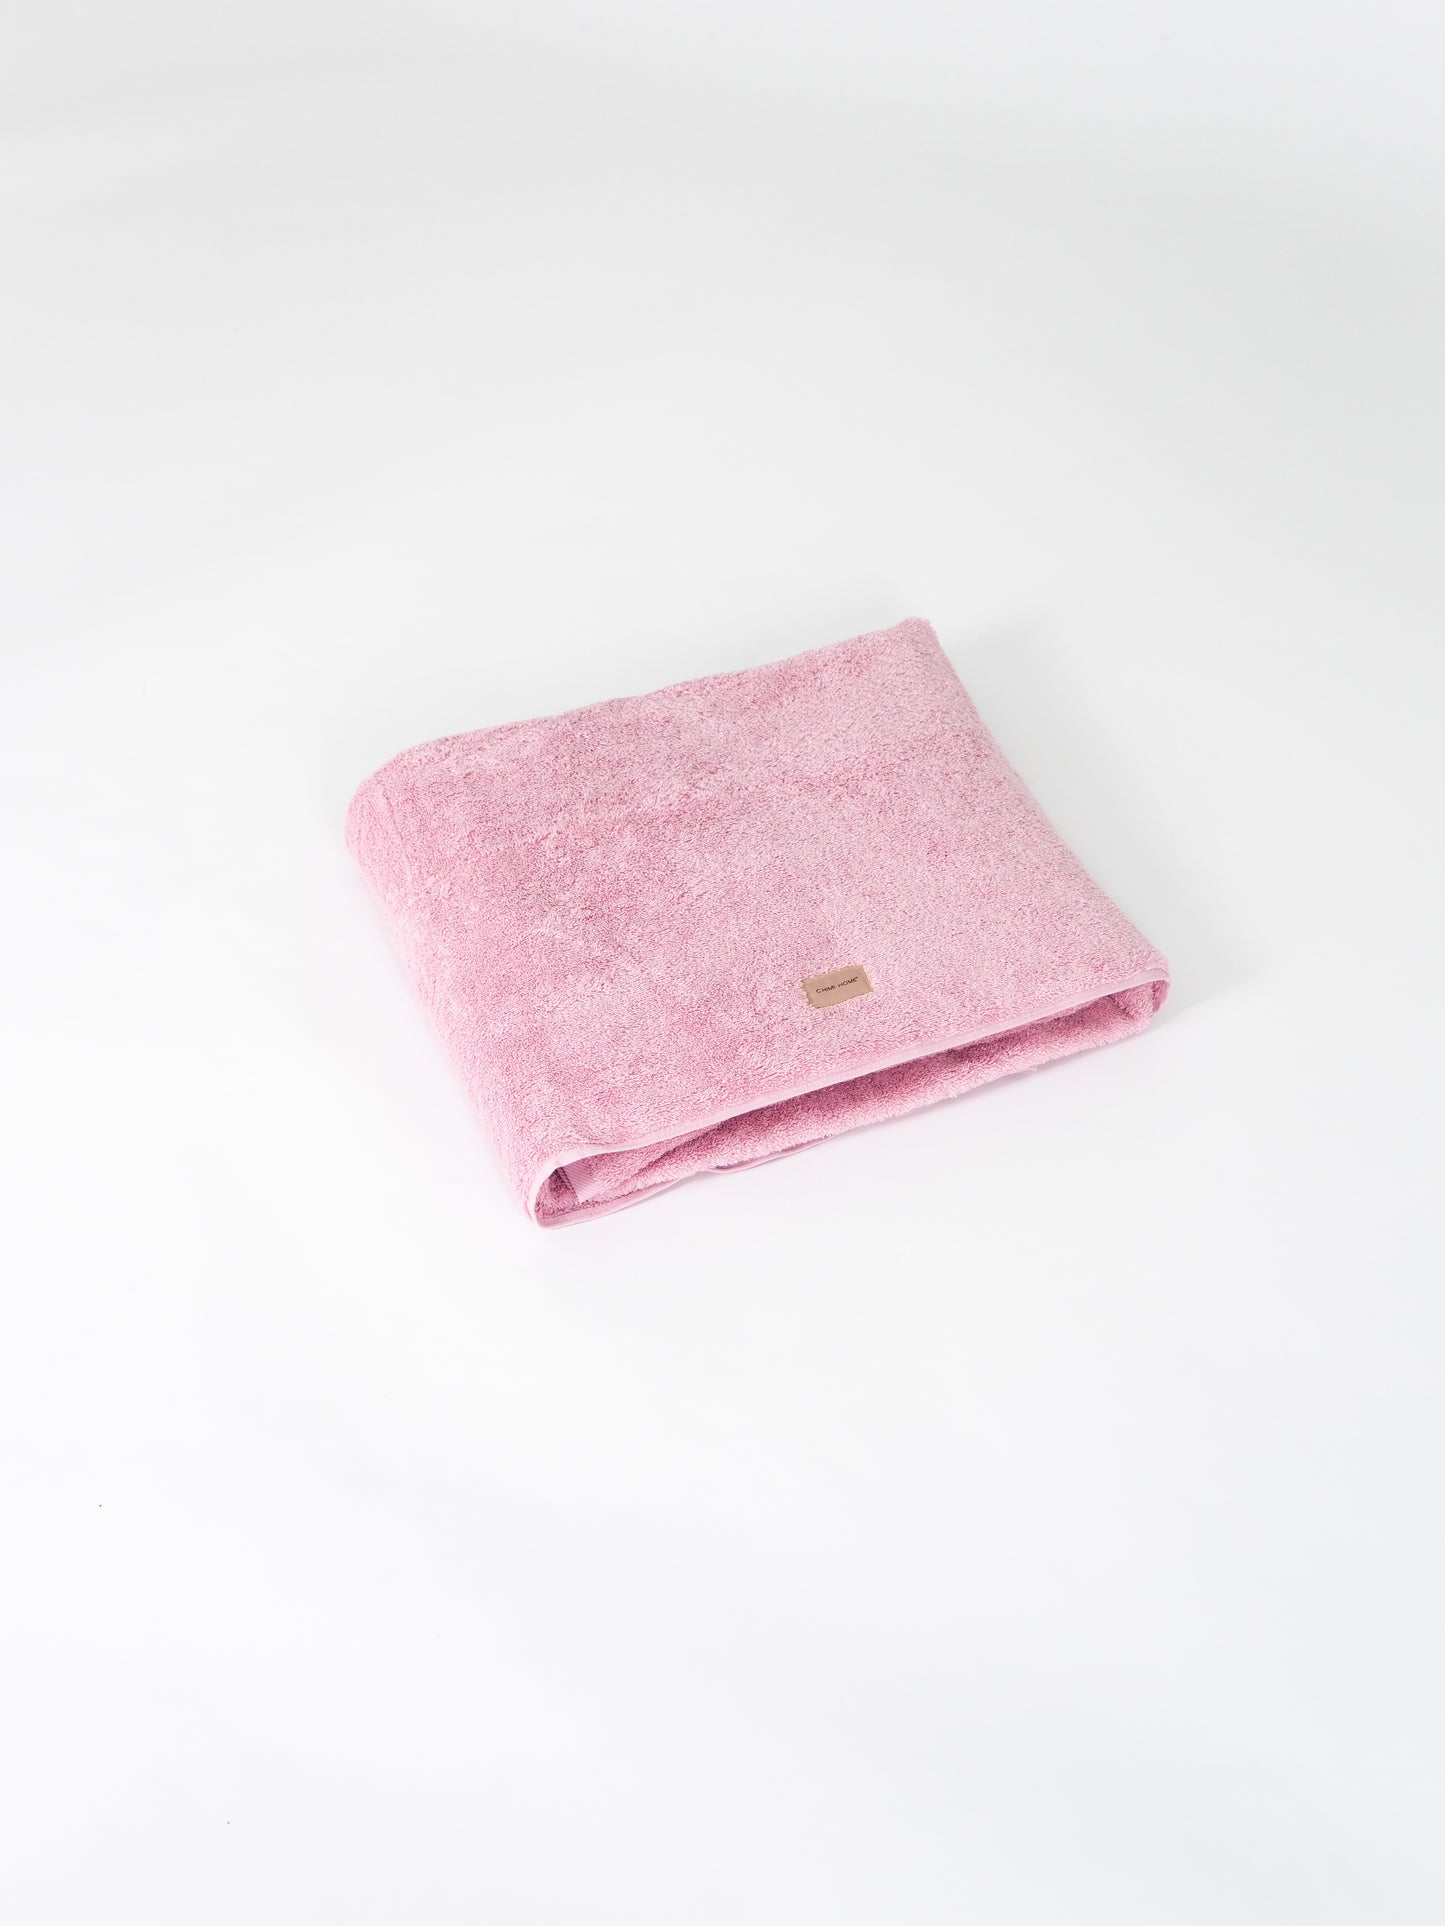 Rosa Handduk - Soft Pink